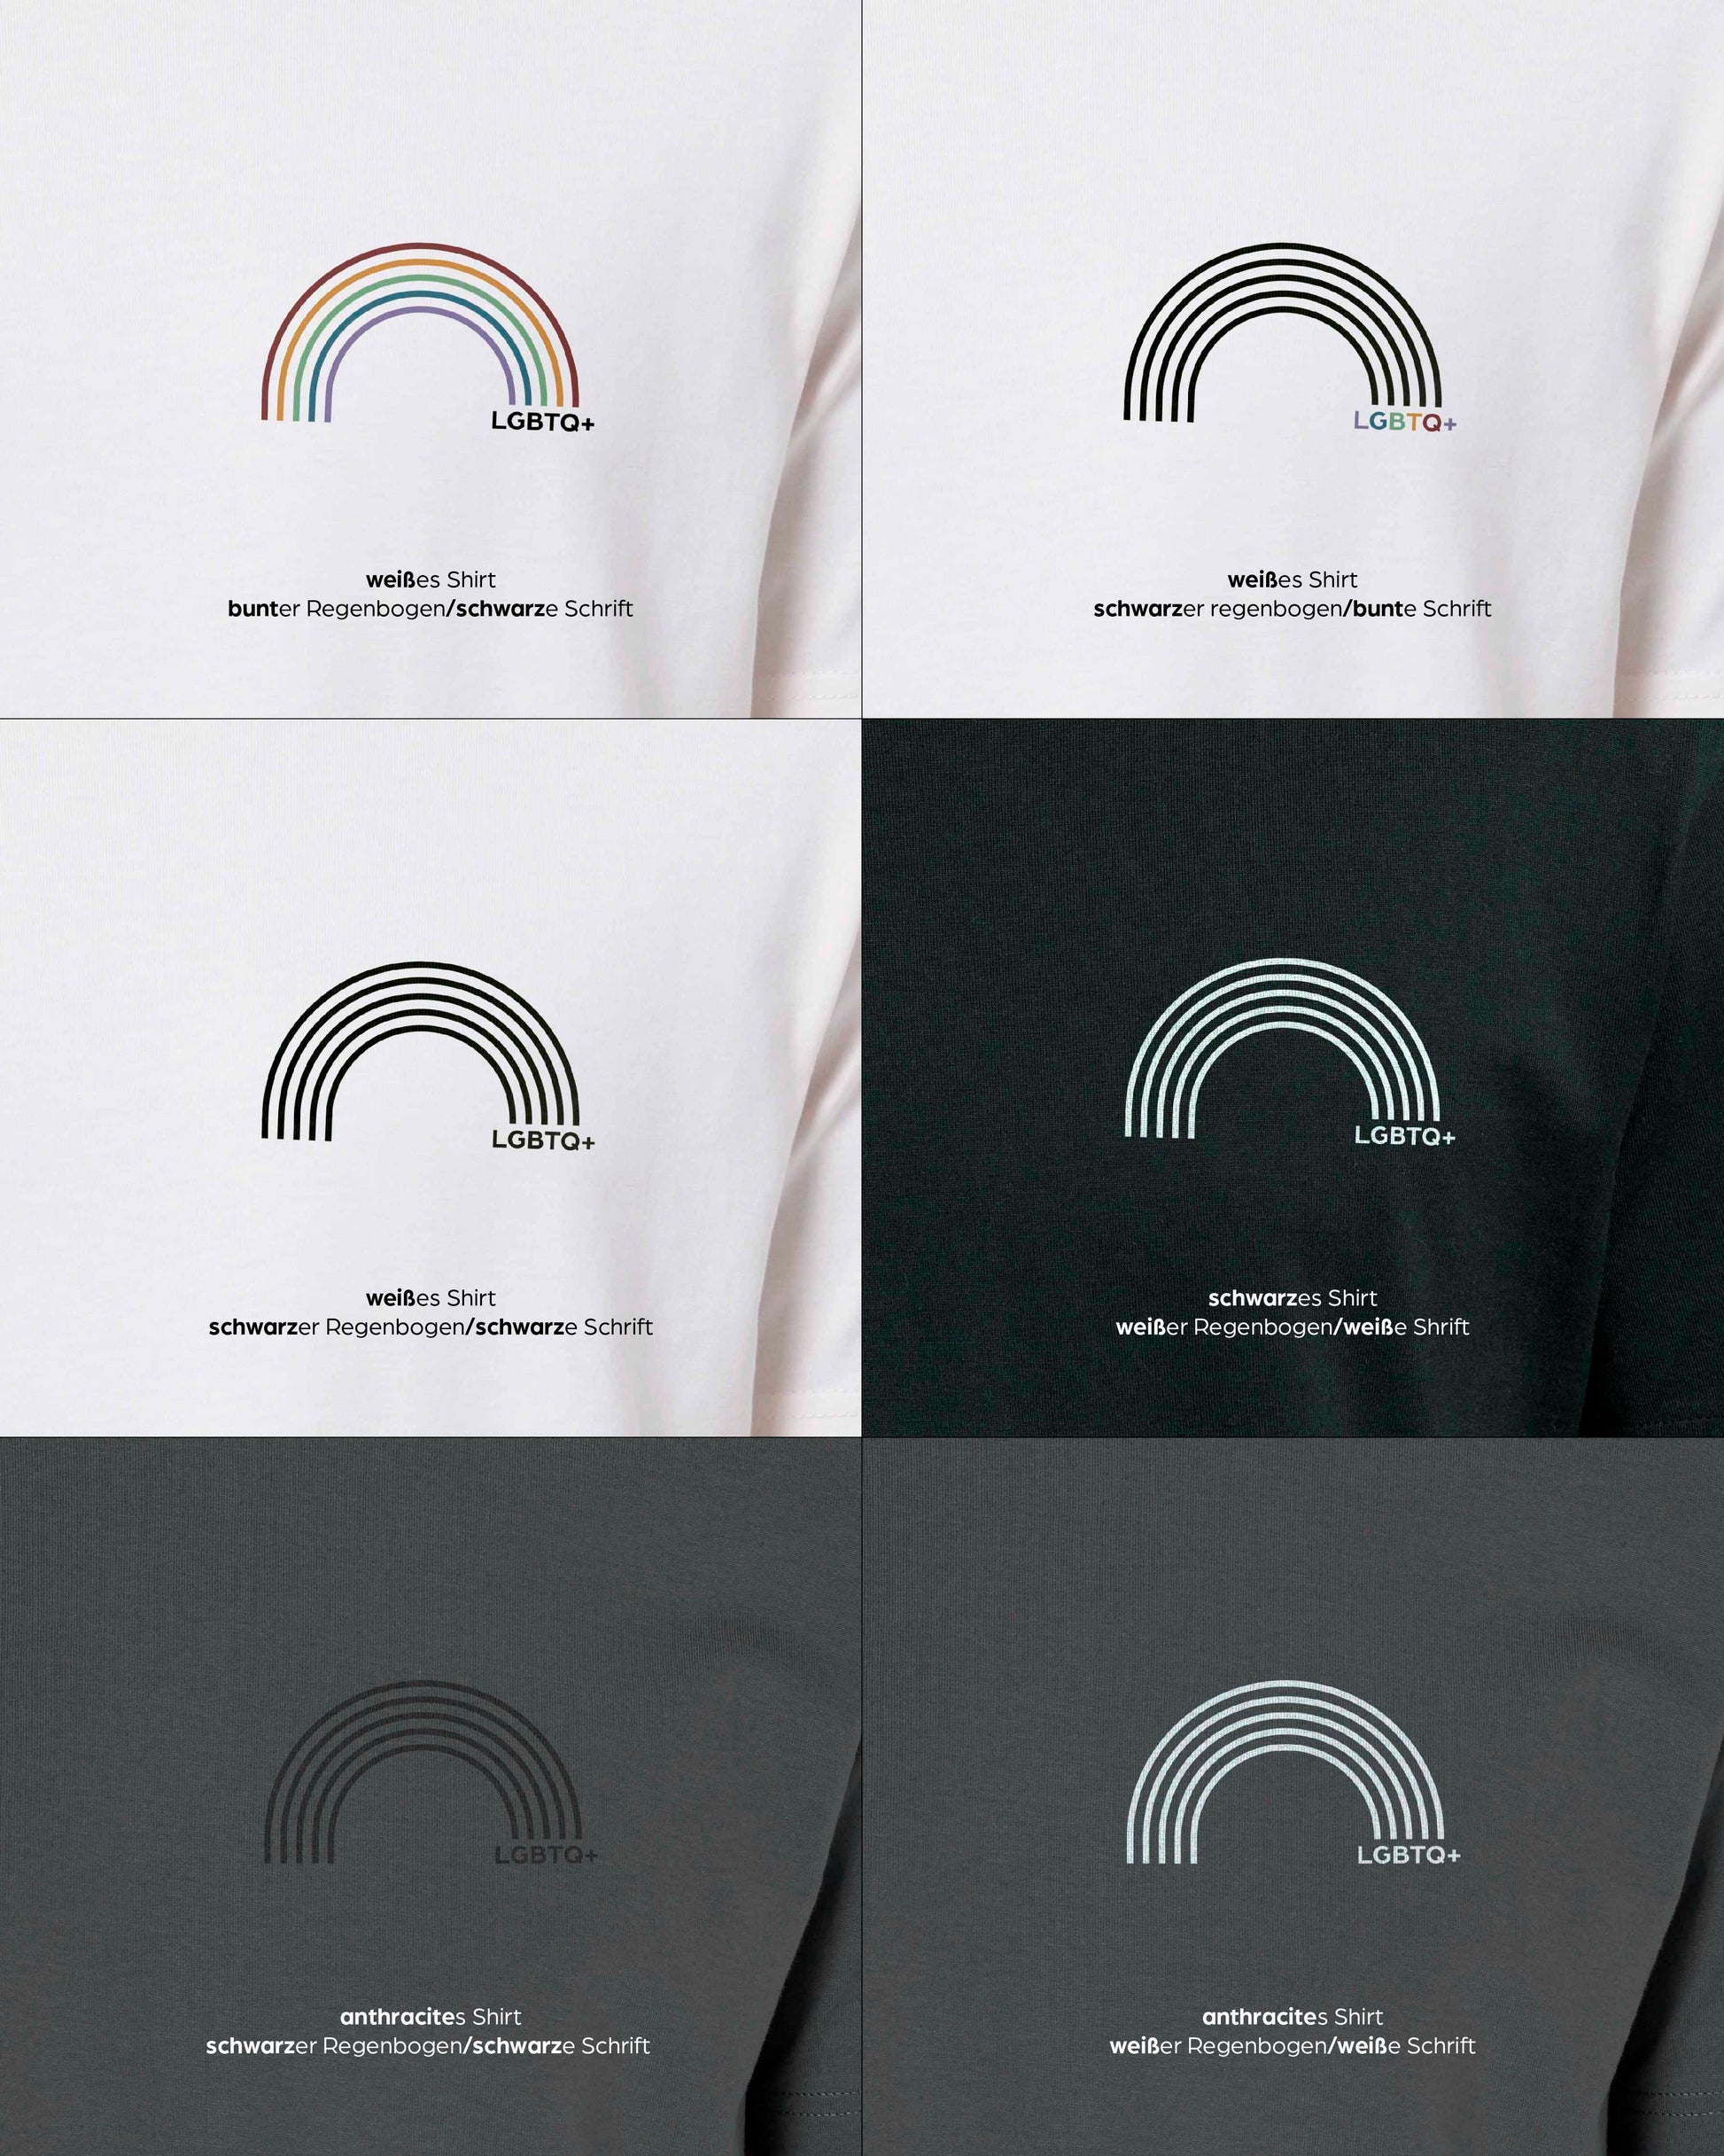 EINHORST® unisex Organic Shirt mit dem Motiv "lgbtq+ Regenbogen", Bild von allen Farbkombinationen